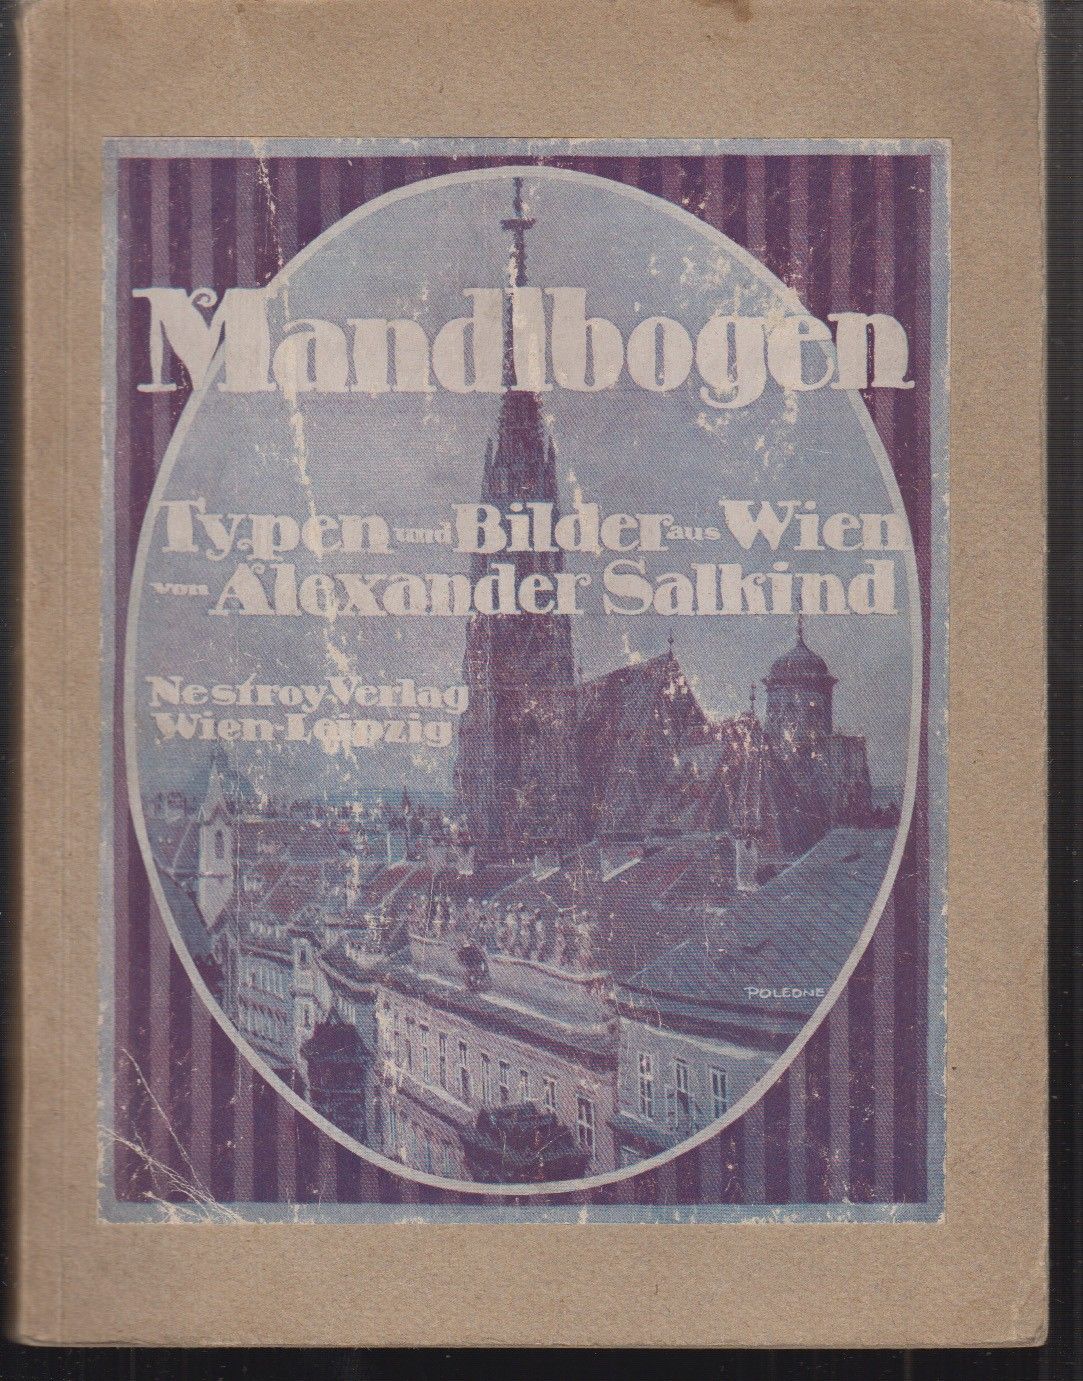 SALKIND, Alexander. Mandlbogen. Typen und Bilder aus Wien 1912-18.